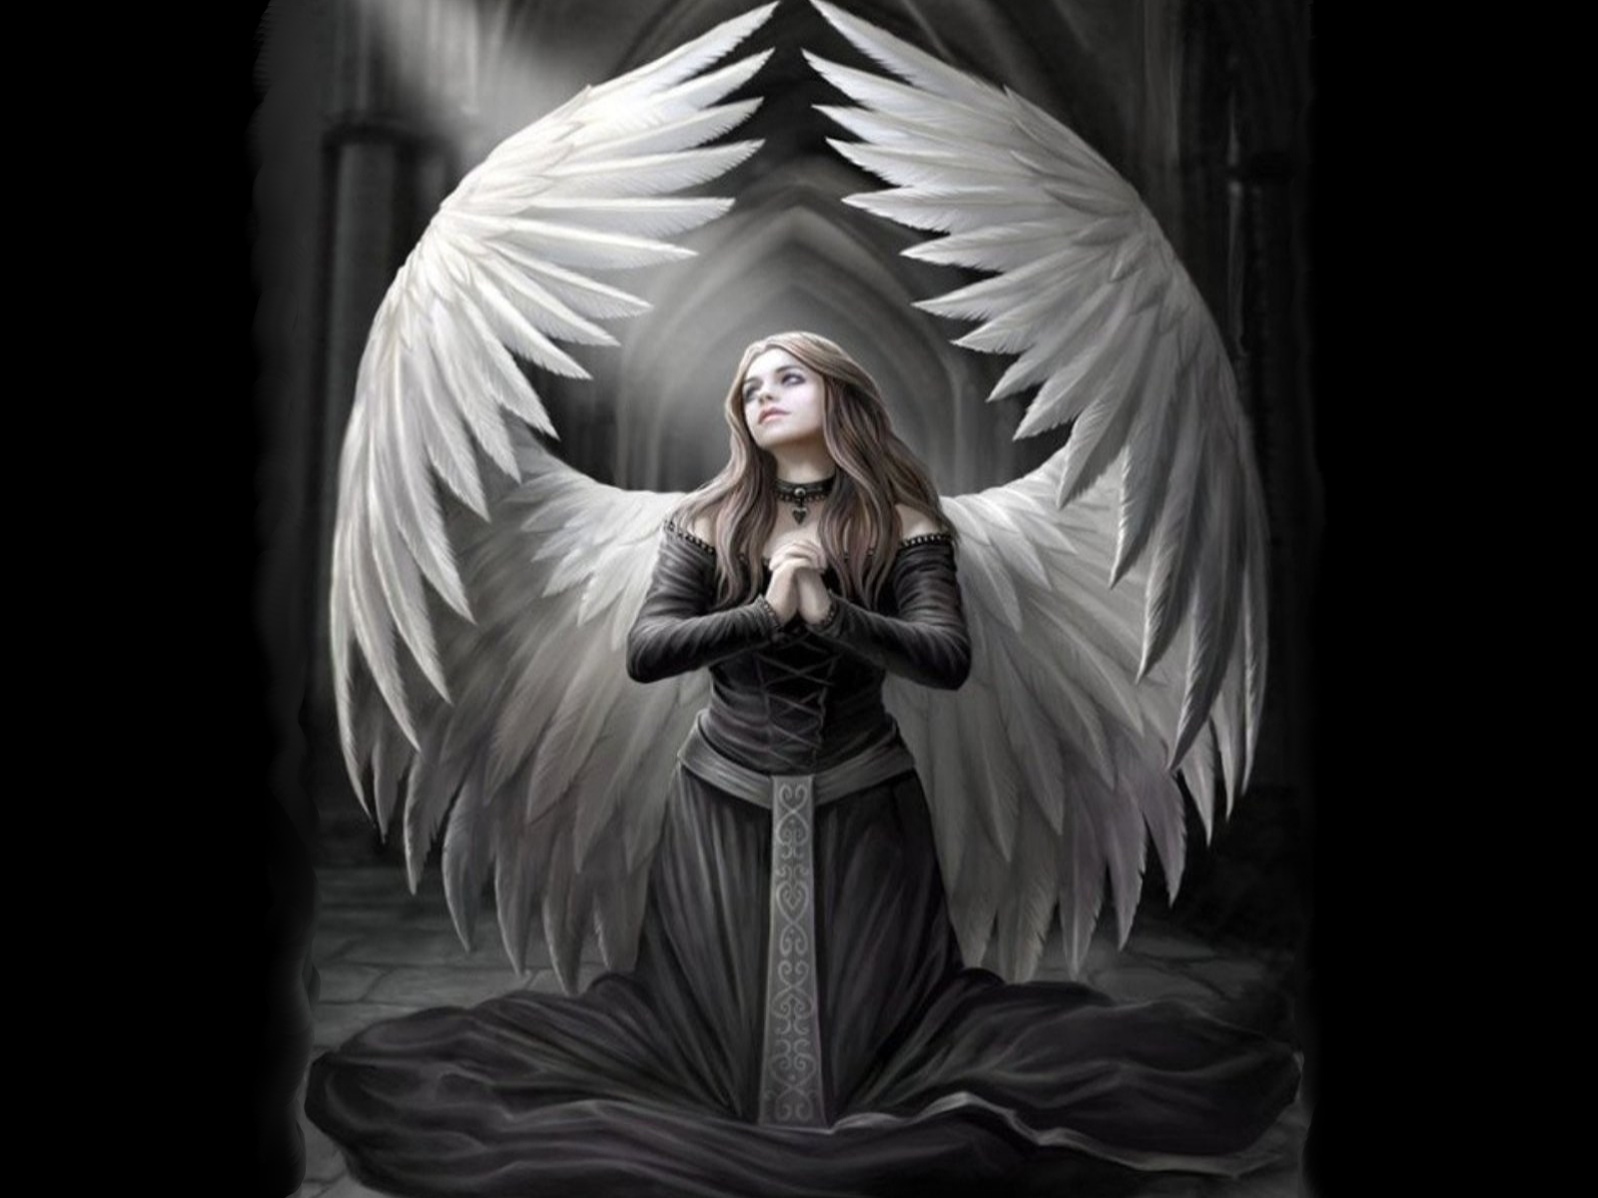 papel pintado engel,ángel,mitología,personaje de ficción,criatura sobrenatural,arte